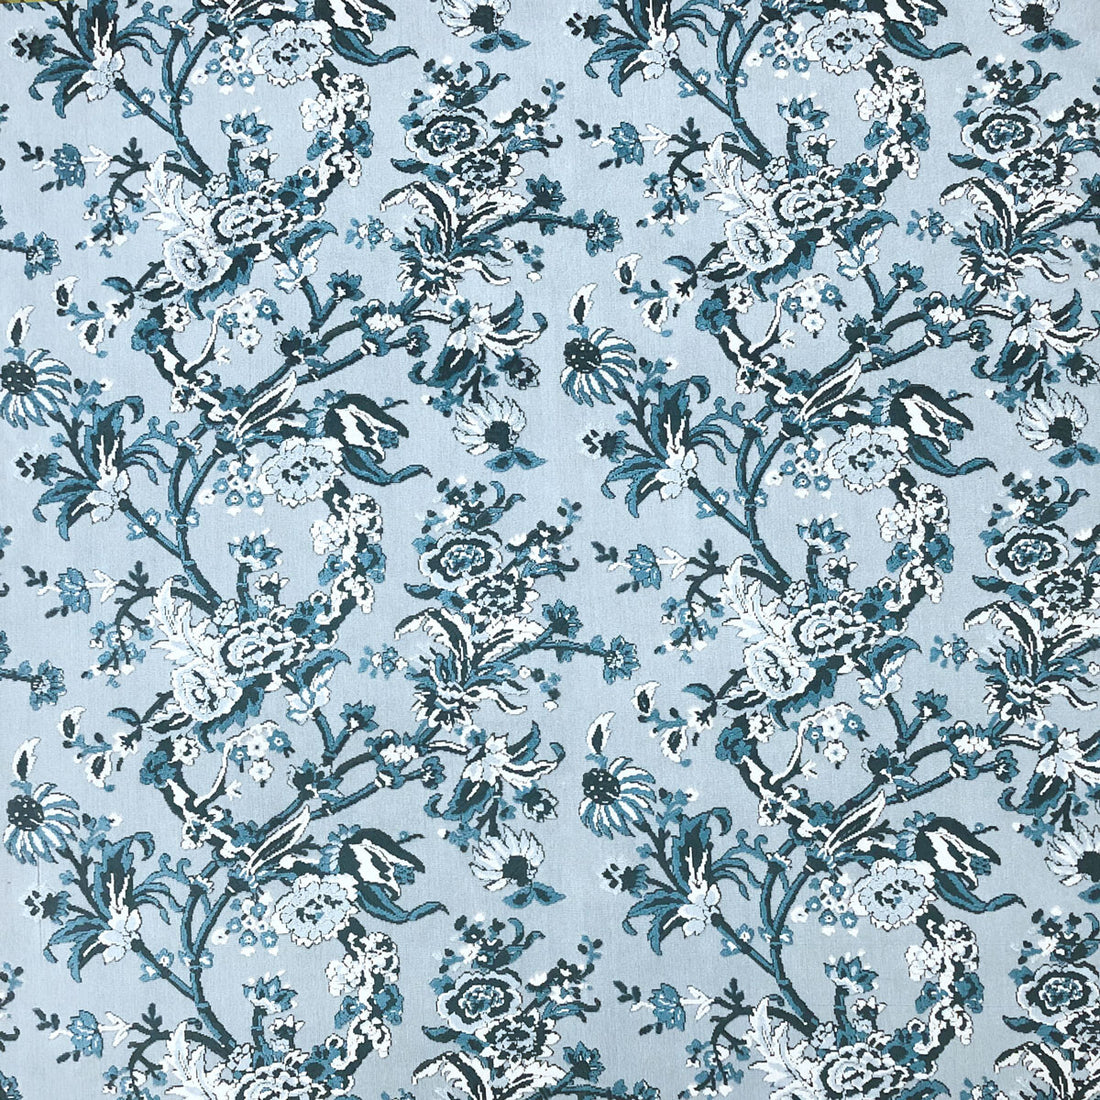 Carlota fabric in azul color - pattern LCT1065.002.0 - by Gaston y Daniela in the Lorenzo Castillo VI collection